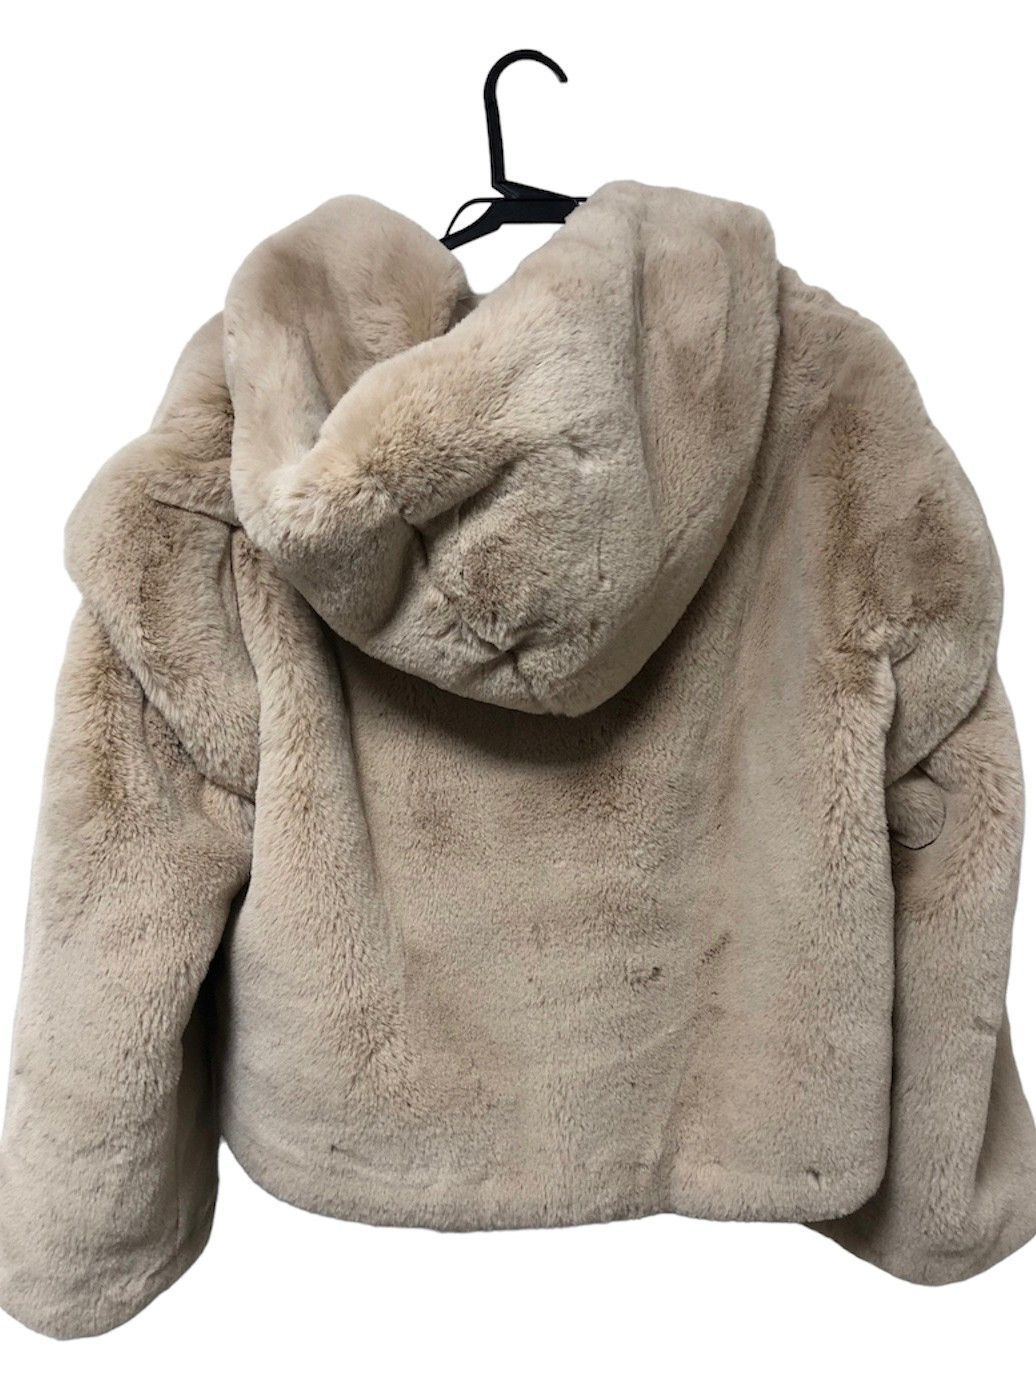 送料無料（沖縄は1000円) Alexiastam Eco Fur Hooded Jacket Beige